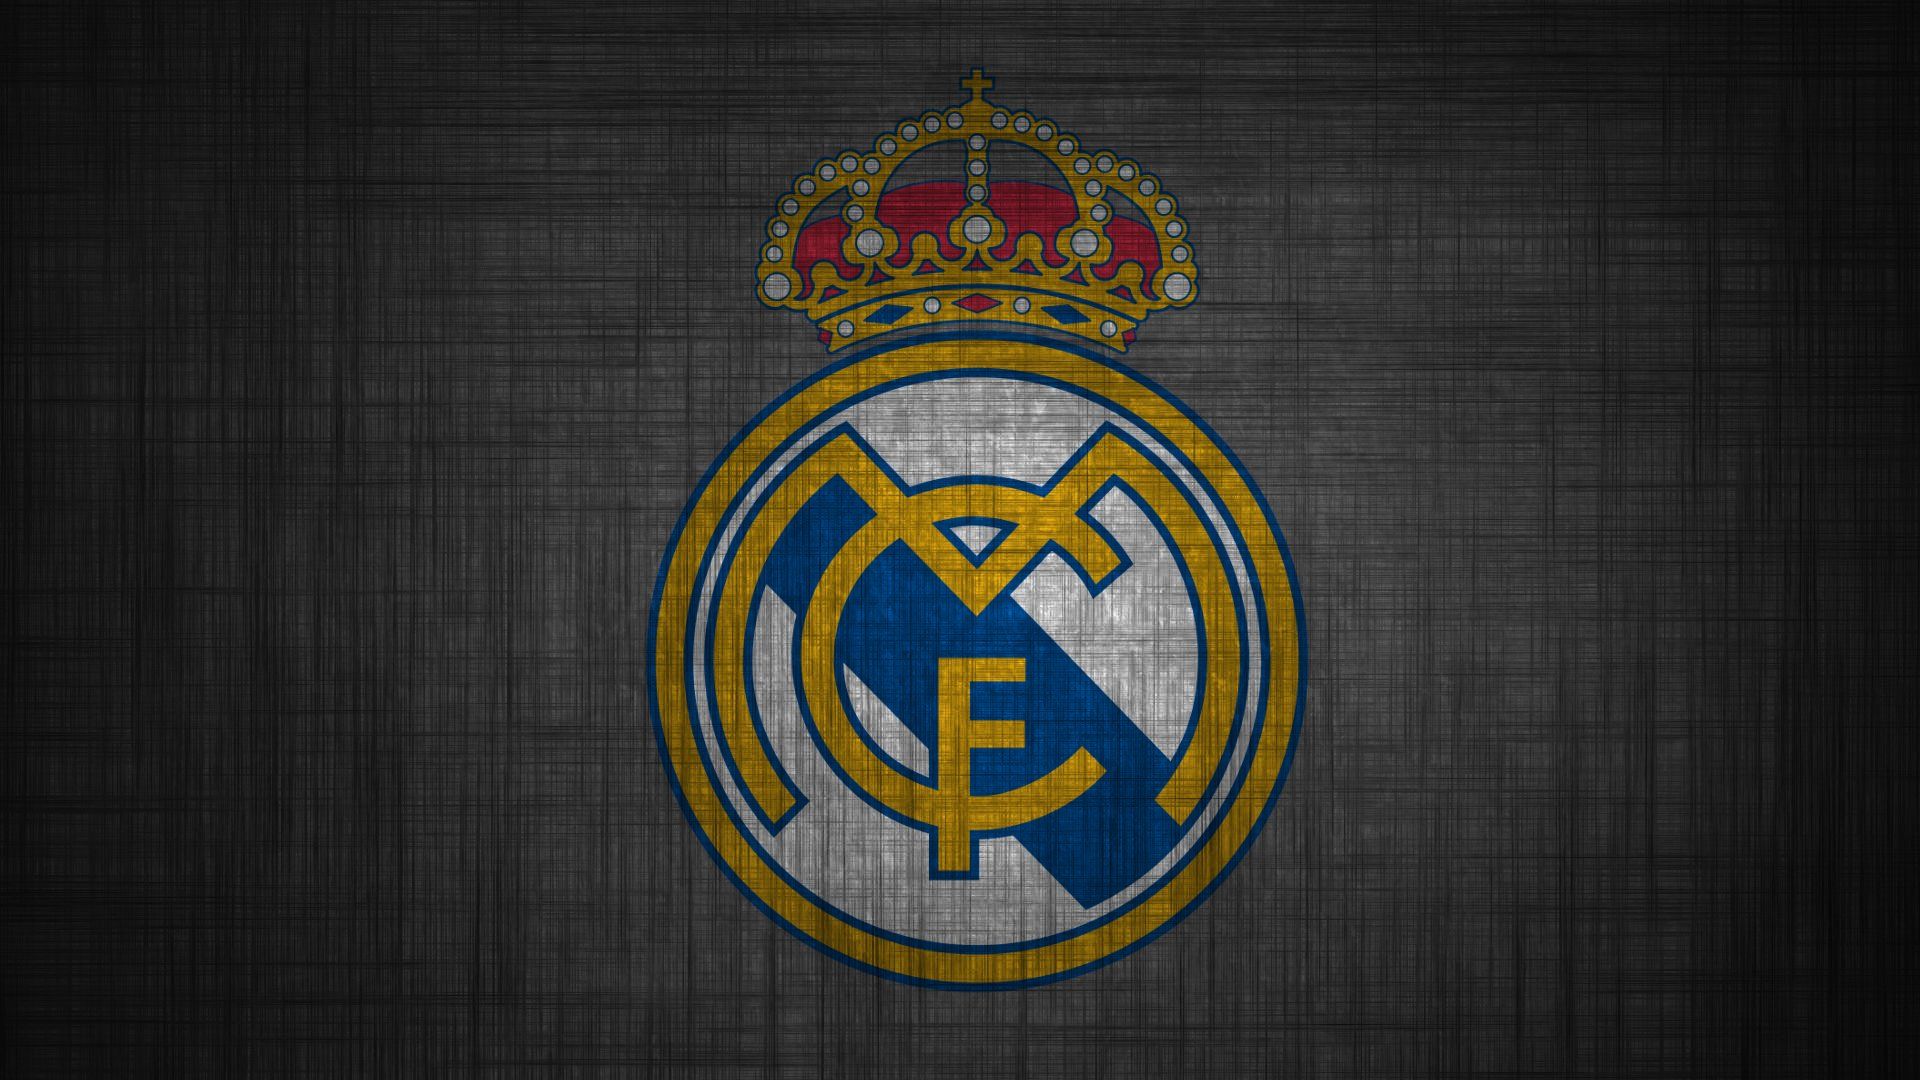 22+] Real Madrid Logo Wallpaper HD 2017 - WallpaperSafari